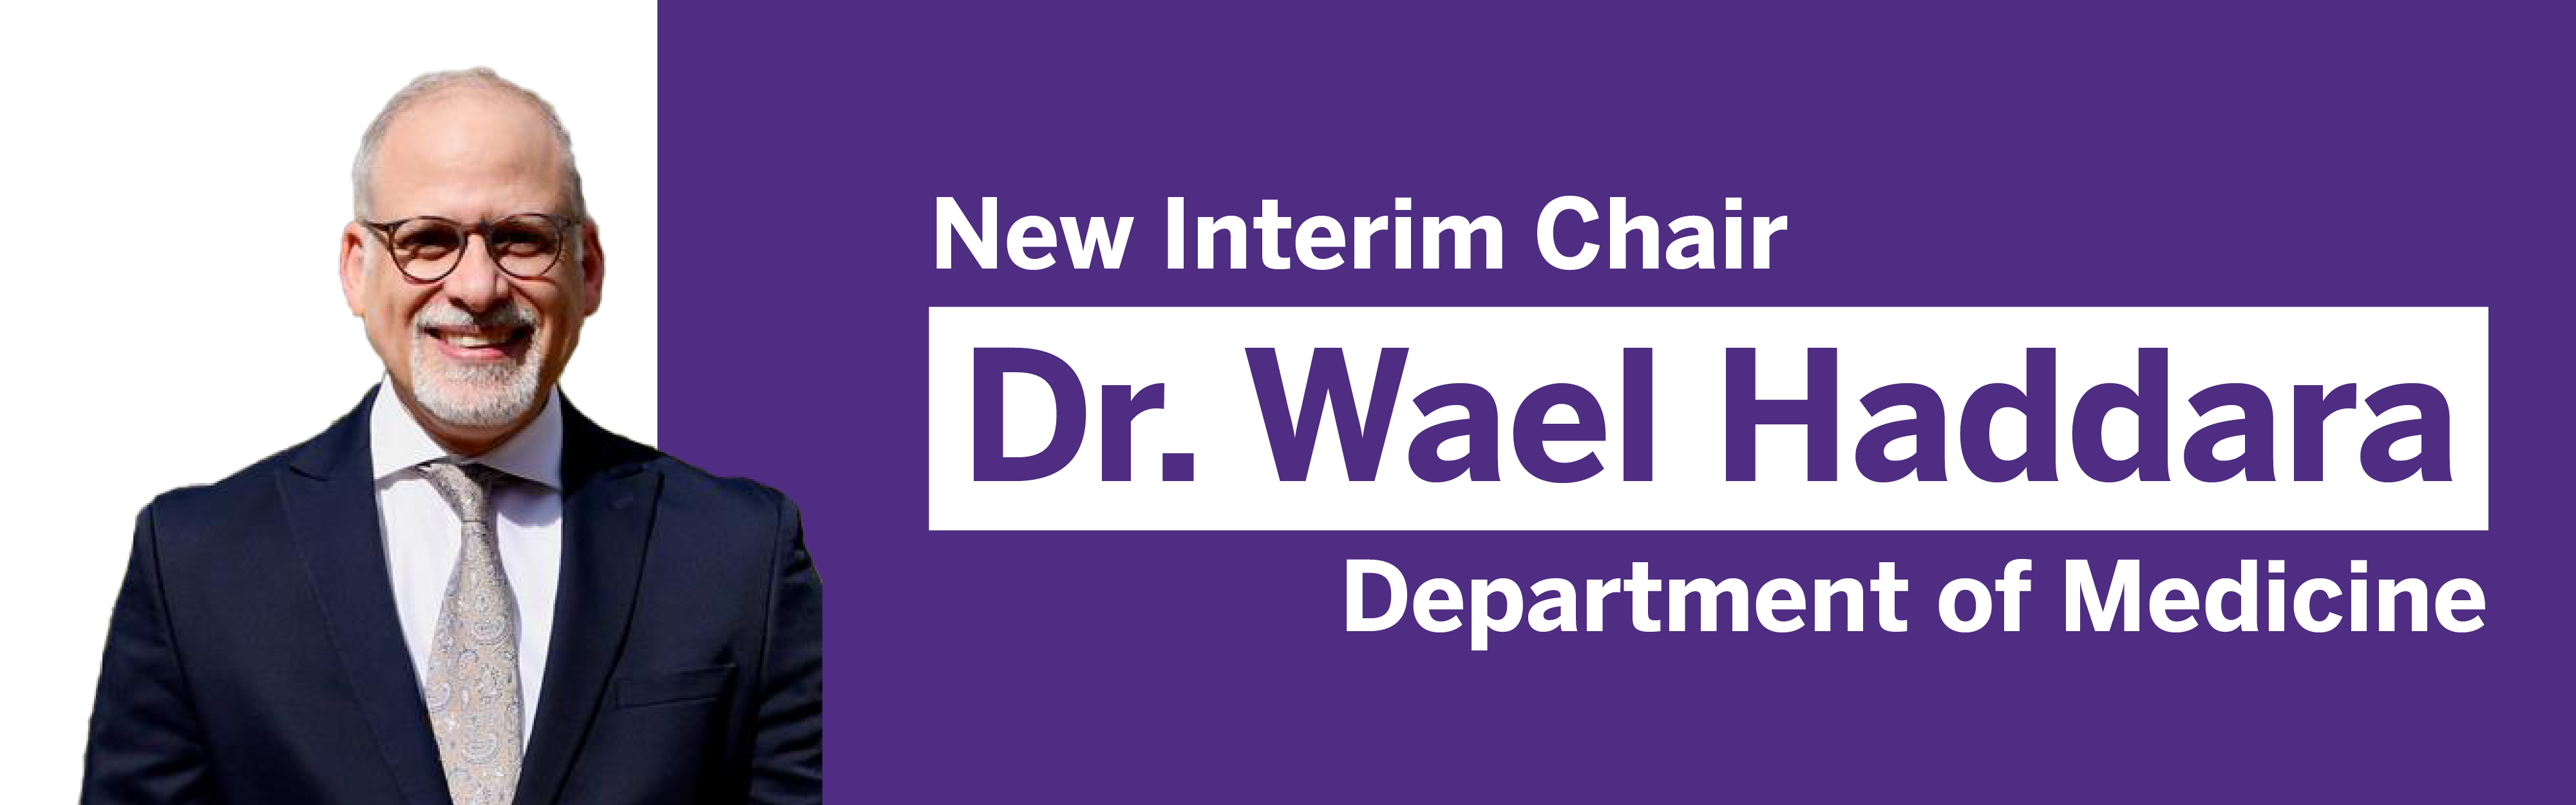 New Interim Chair- Dr. Haddara 